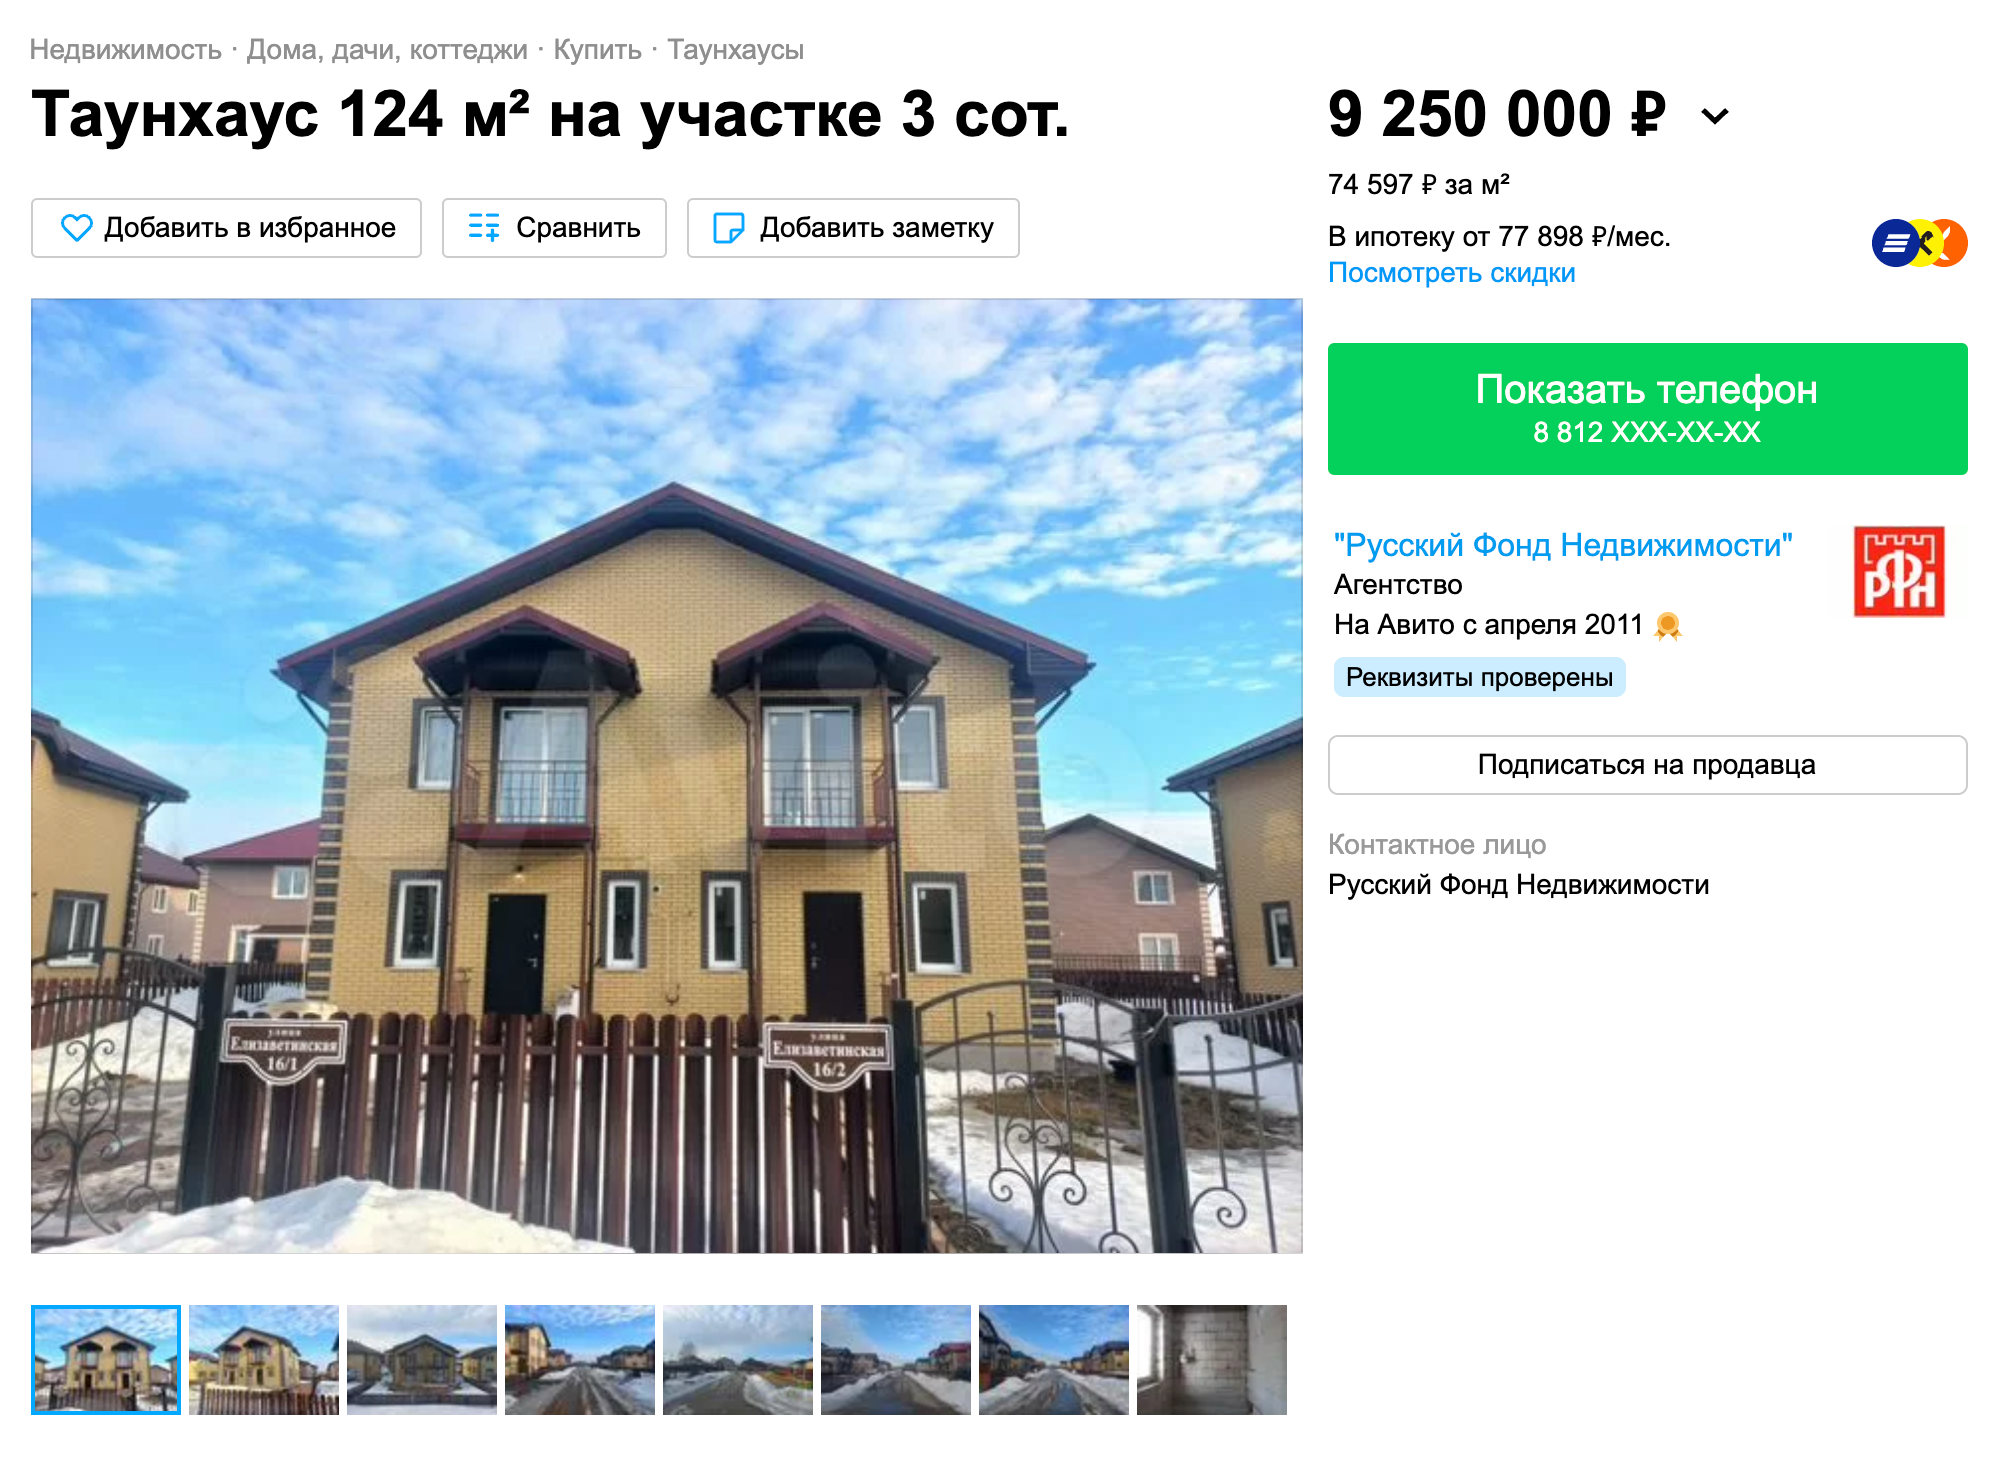 Дома, дачи, коттеджи и таунхаусы в Новосибирской области Авито Юла — объявления о продаже и аренде